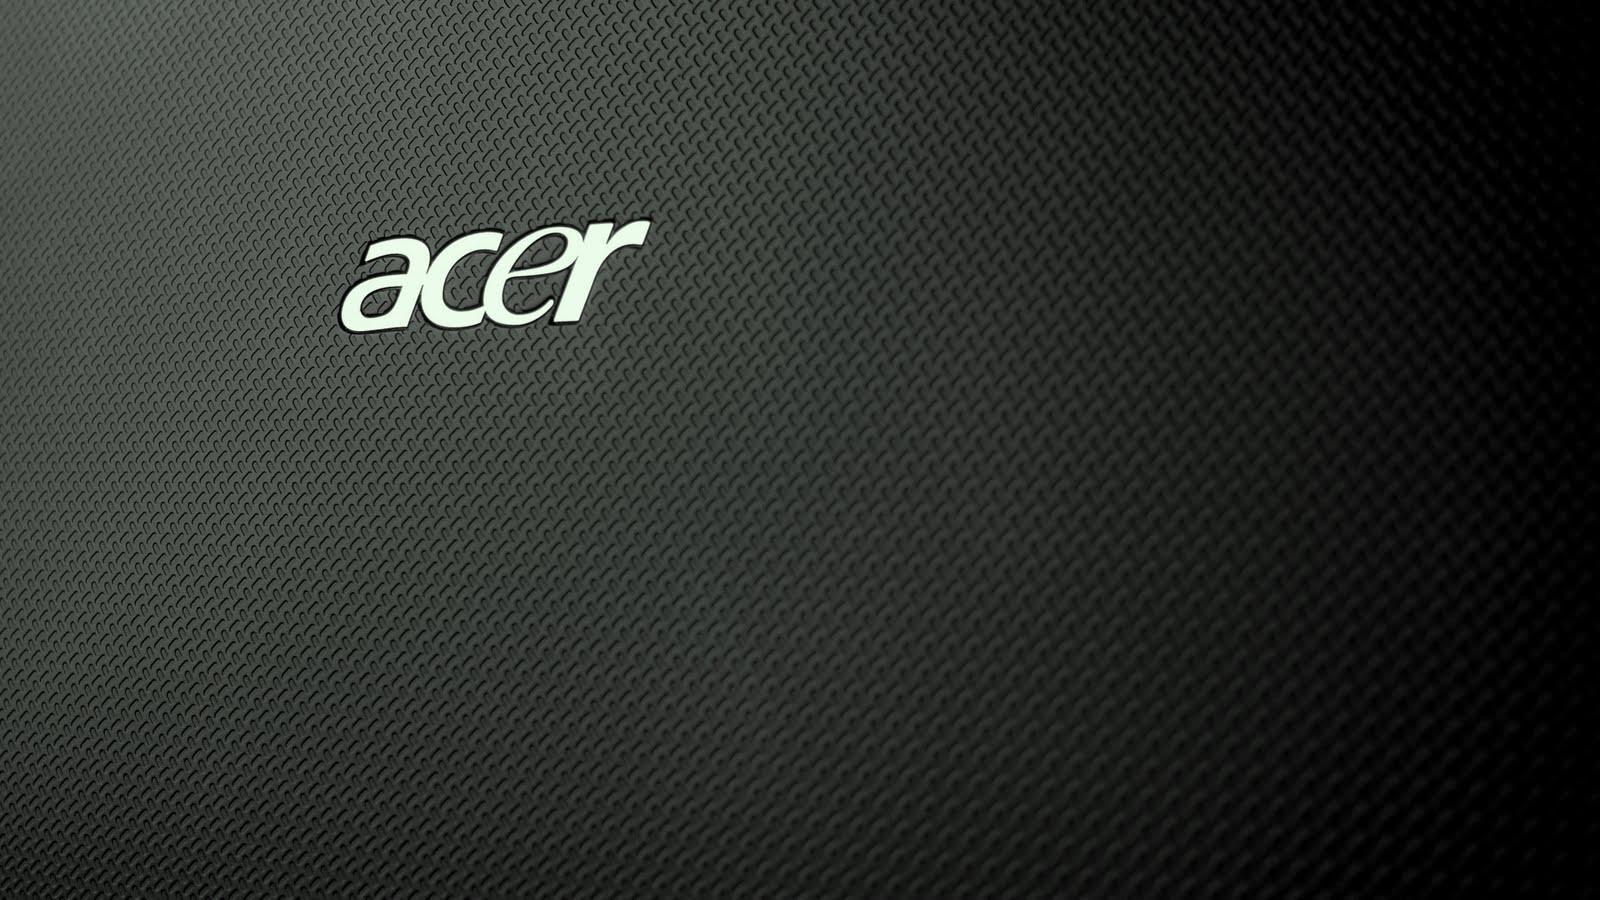 Acer Aspire 5000 Windows 7 Wallpaper. PicsWallpaper.Com